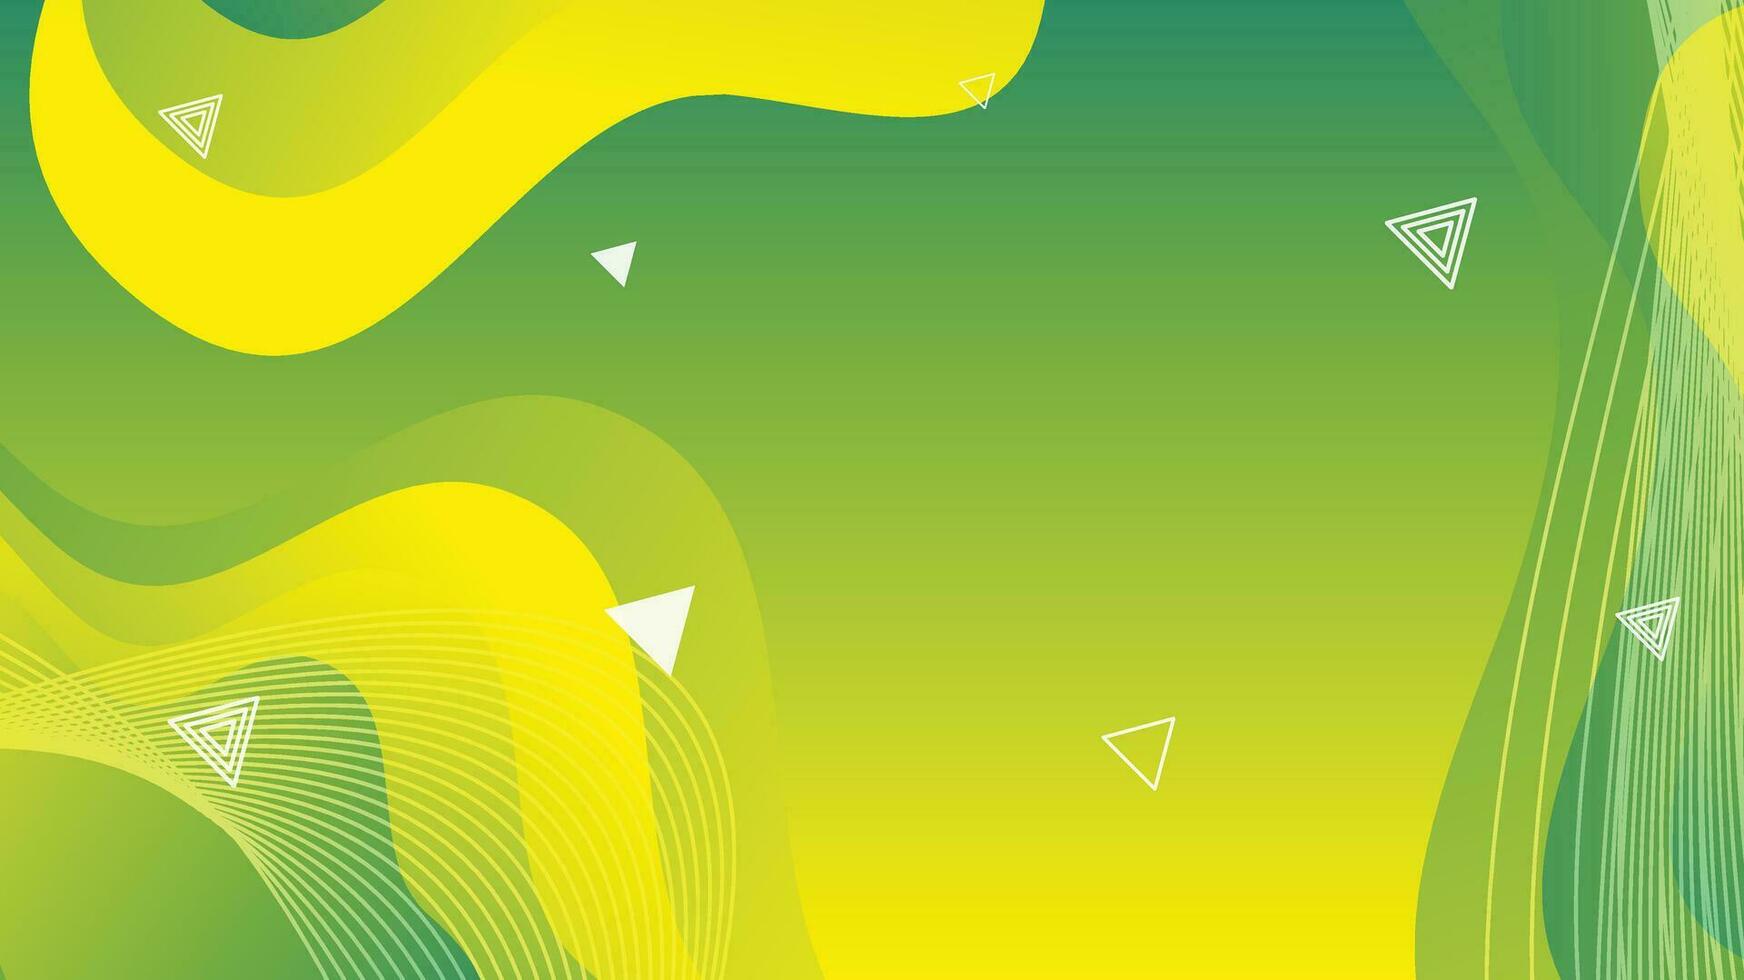 groen en geel helling vloeistof Golf abstract achtergrond vector